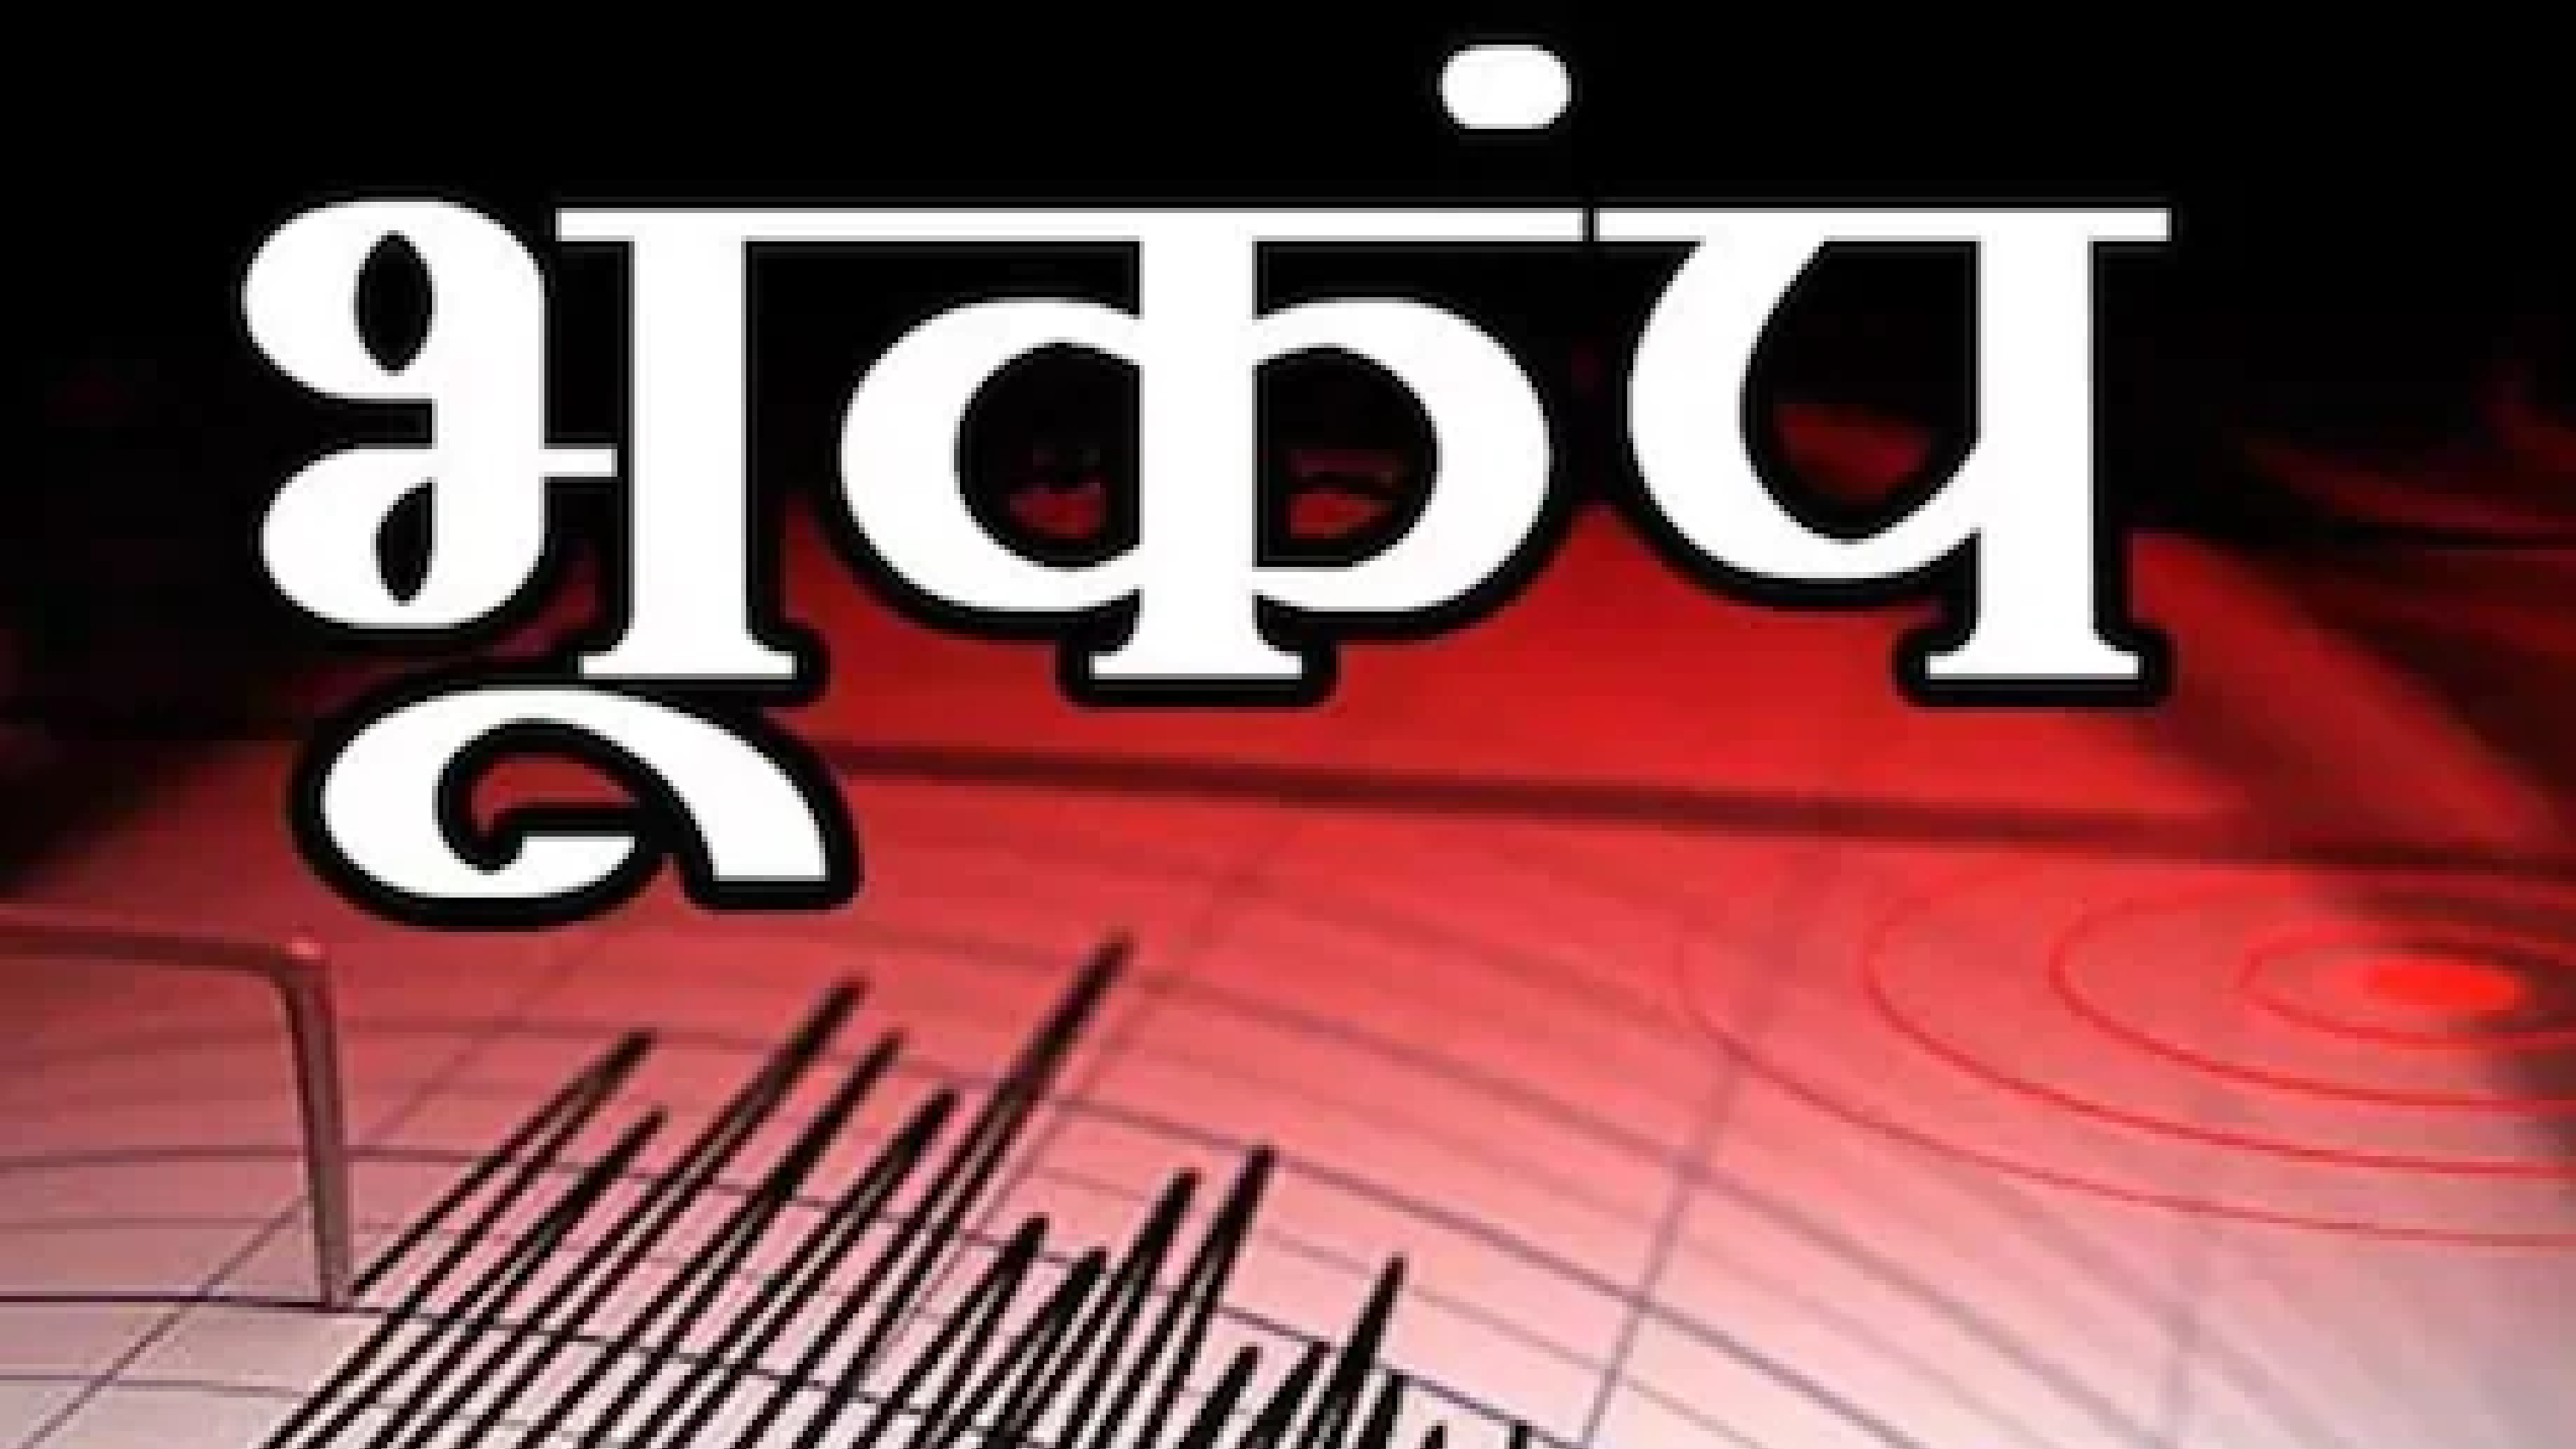 Delhi Earthquake: दिल्ली में महसूस किए गए भूकंप के झटके, रात 9:54 पर लोगों ने महसूस की कंपन